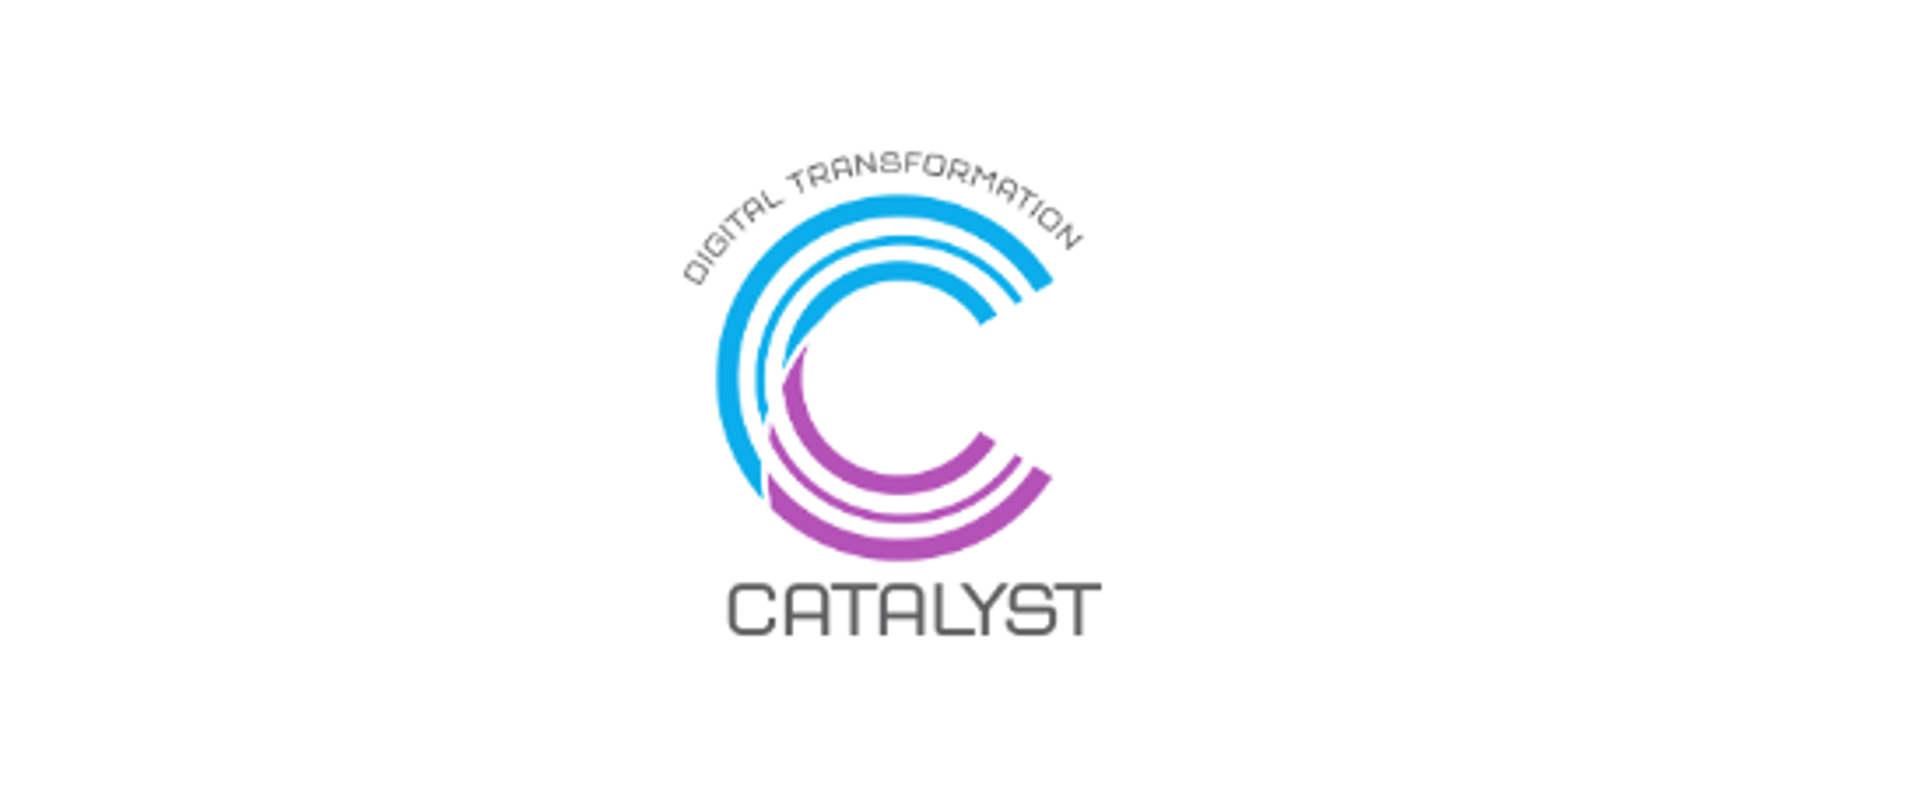 Digital Transformation Catalyst